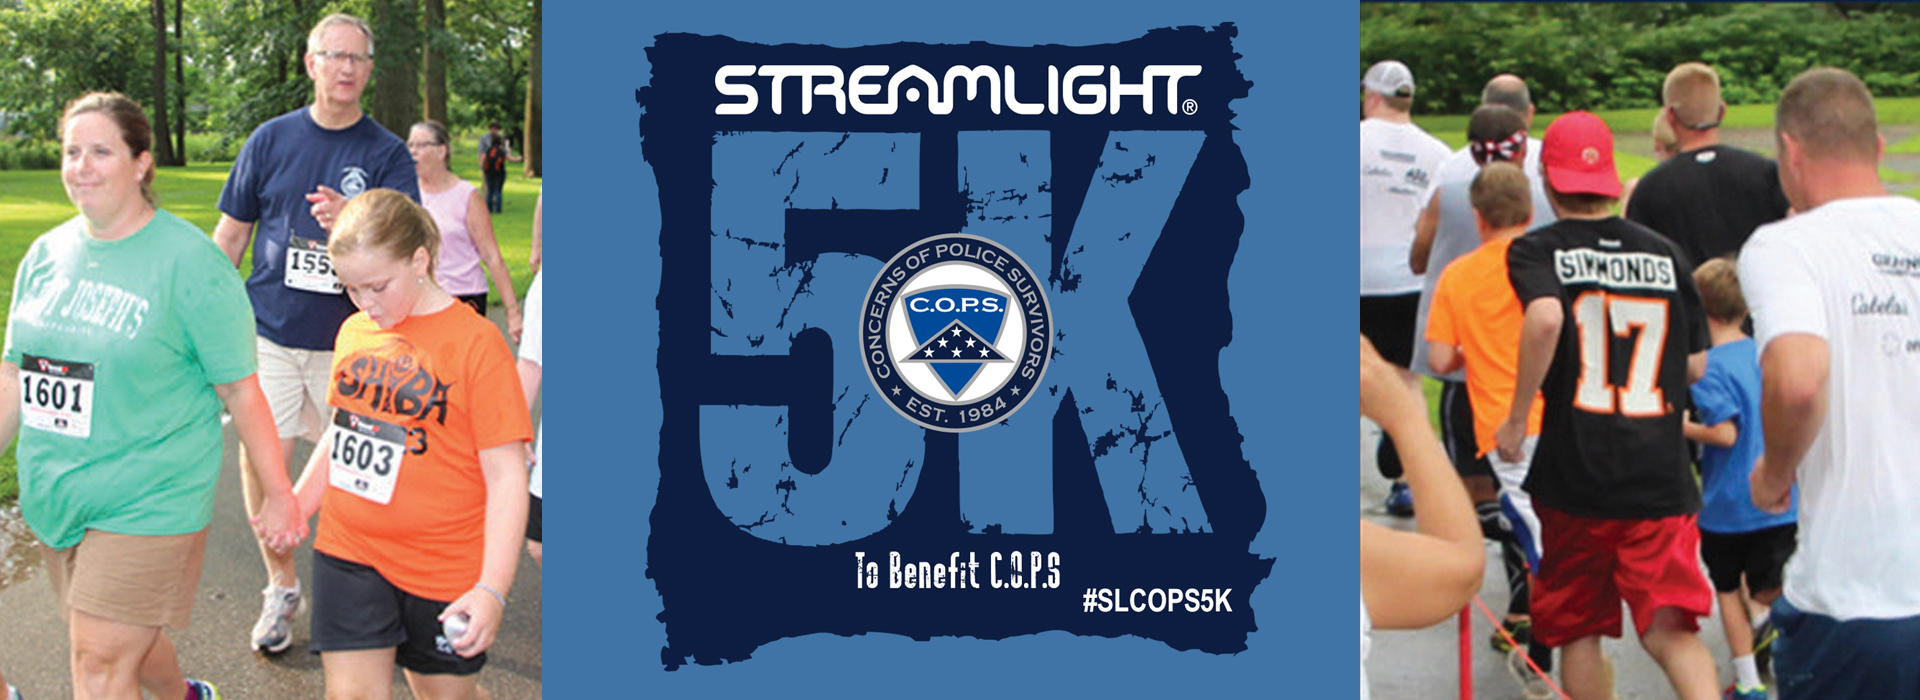 Streamlight 5K 2019